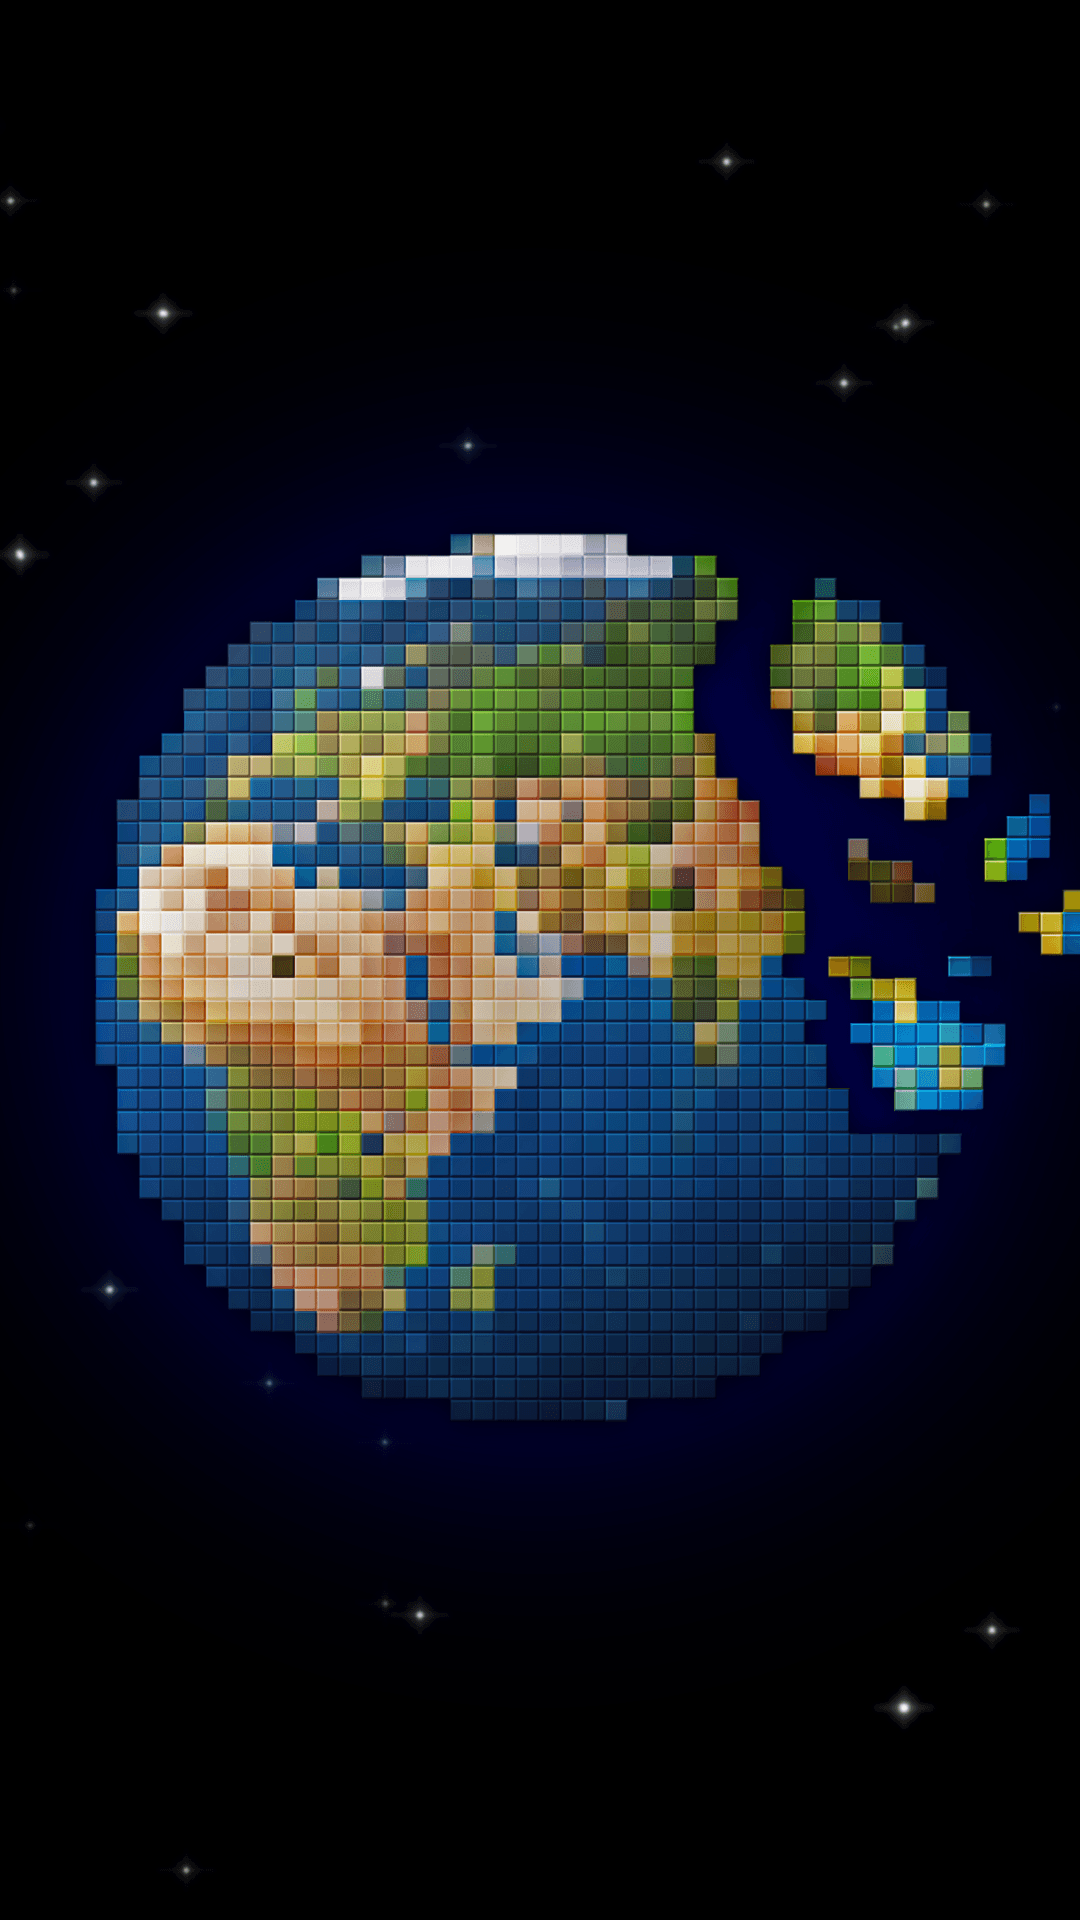 Artistic Pixel Art (1080x1920) Wallpaper